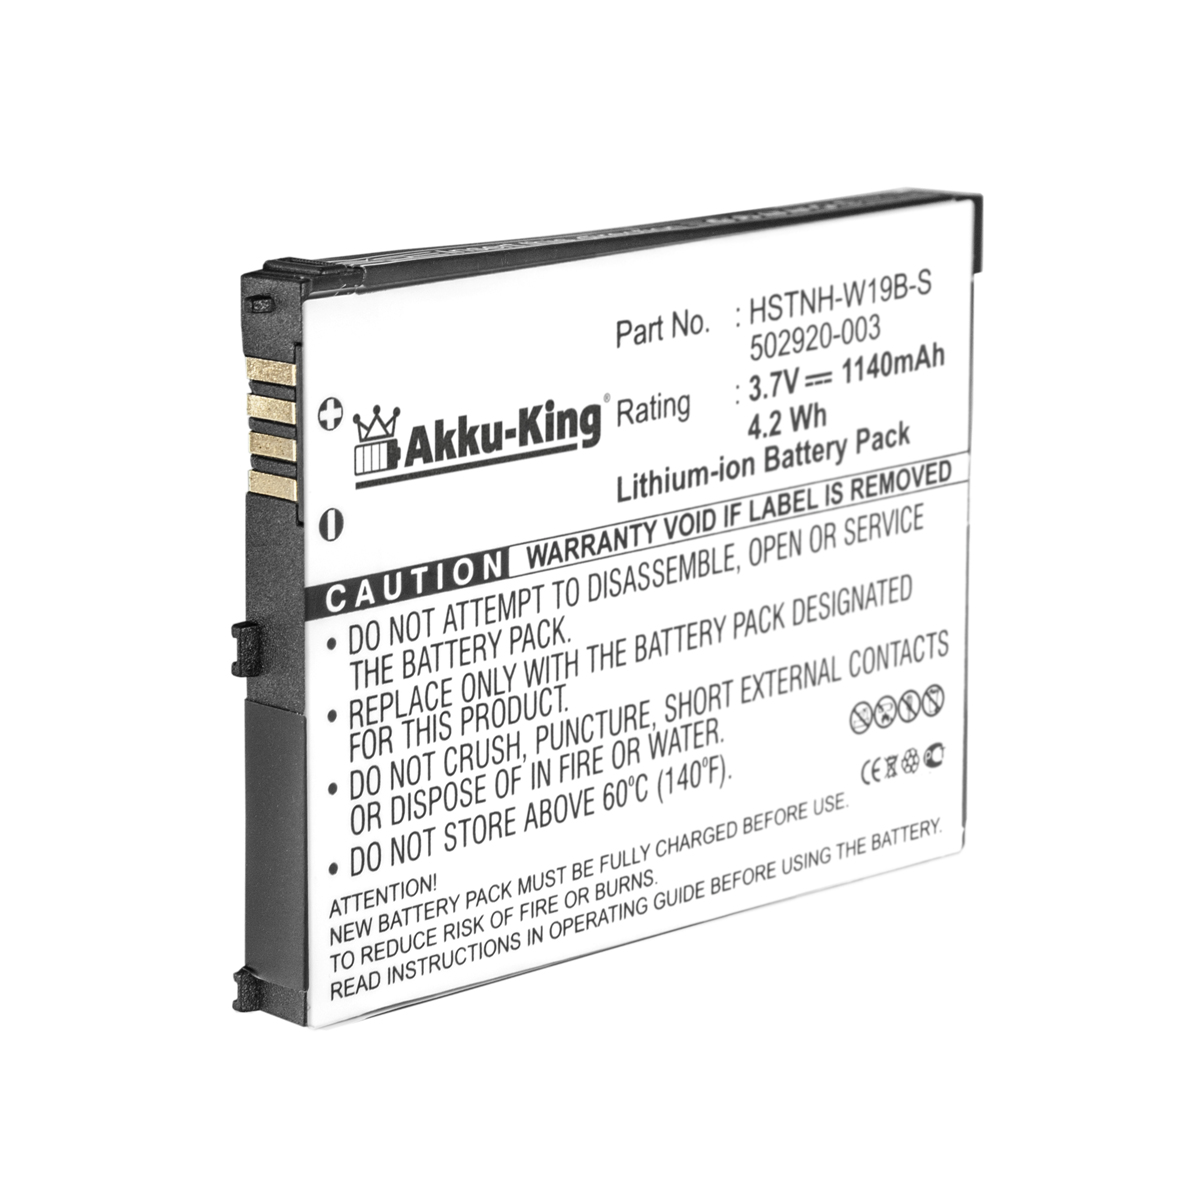 HP 3.7 Akku kompatibel 1140mAh Li-Ion Volt, mit Handy-Akku, AKKU-KING 490165-001